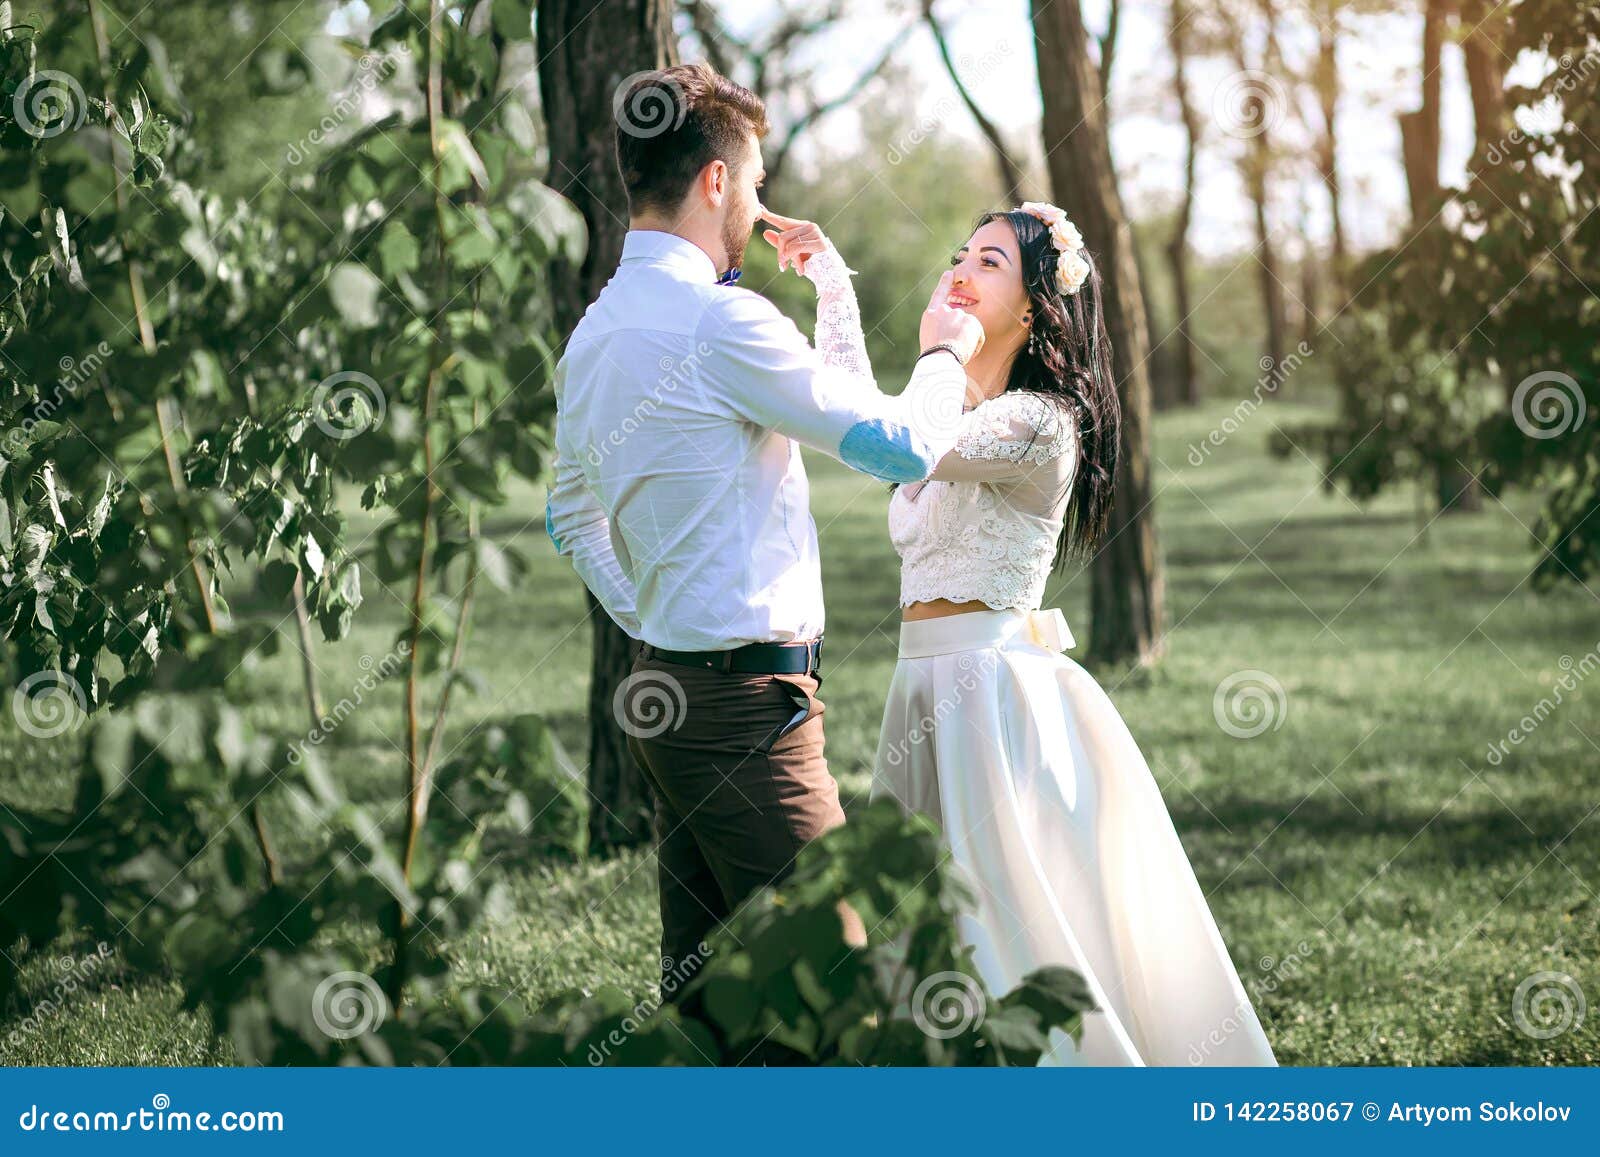 wedding couple bride laughs groom guy girl jokes sunset beautiful bride stylish groom wedding 142258067